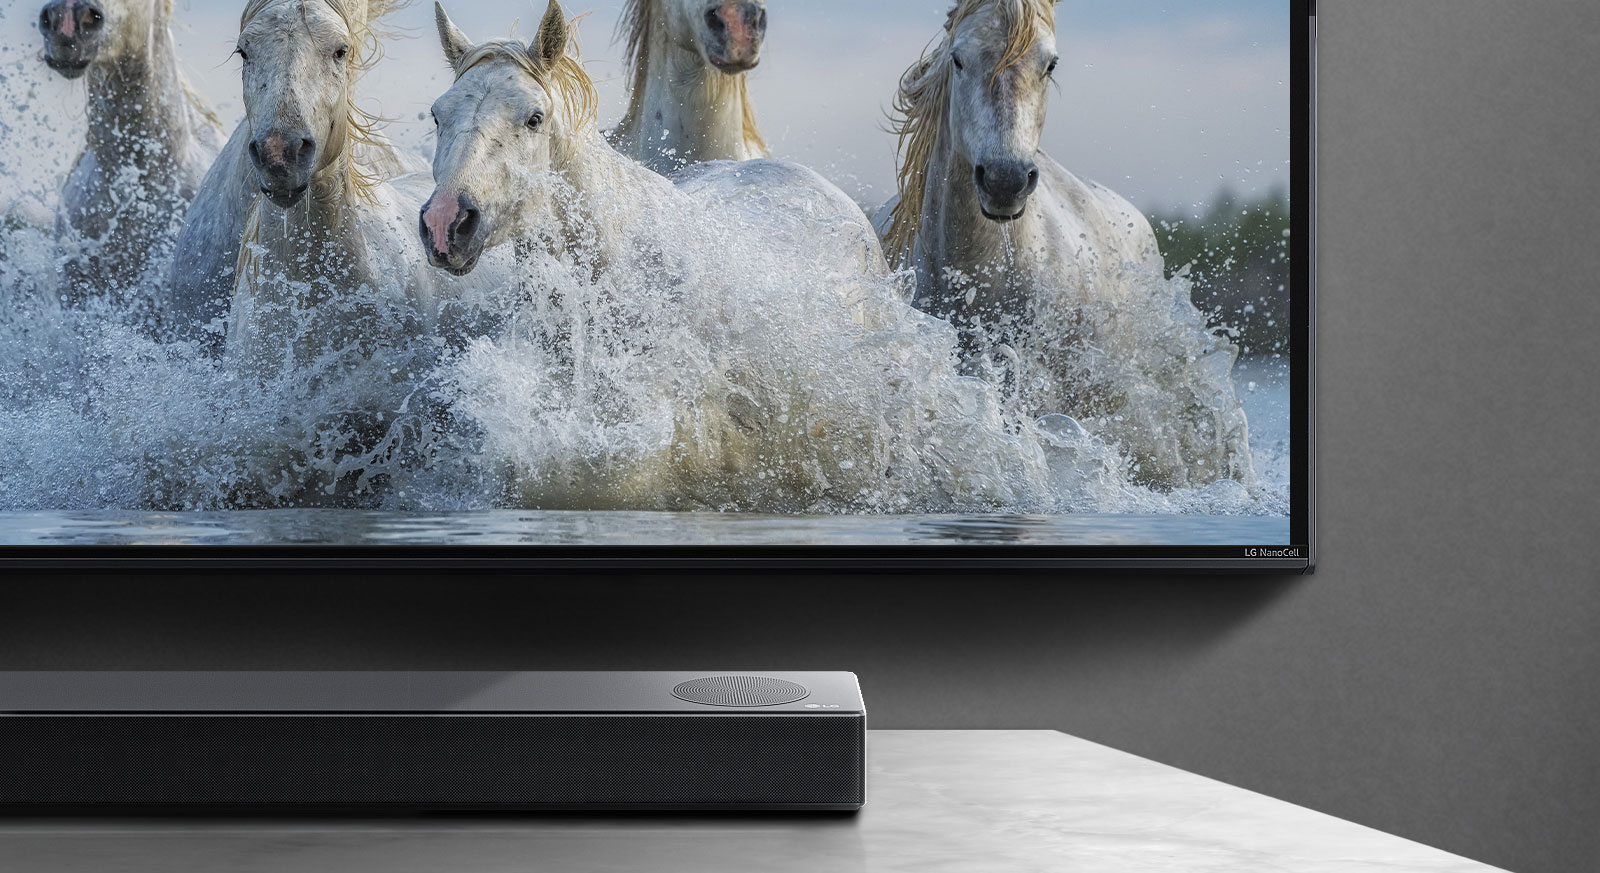 Polovica spodnjega zaslona in polovica zvočnikov.  Televizija prikazuje bele konje, ki tečejo po vodi.